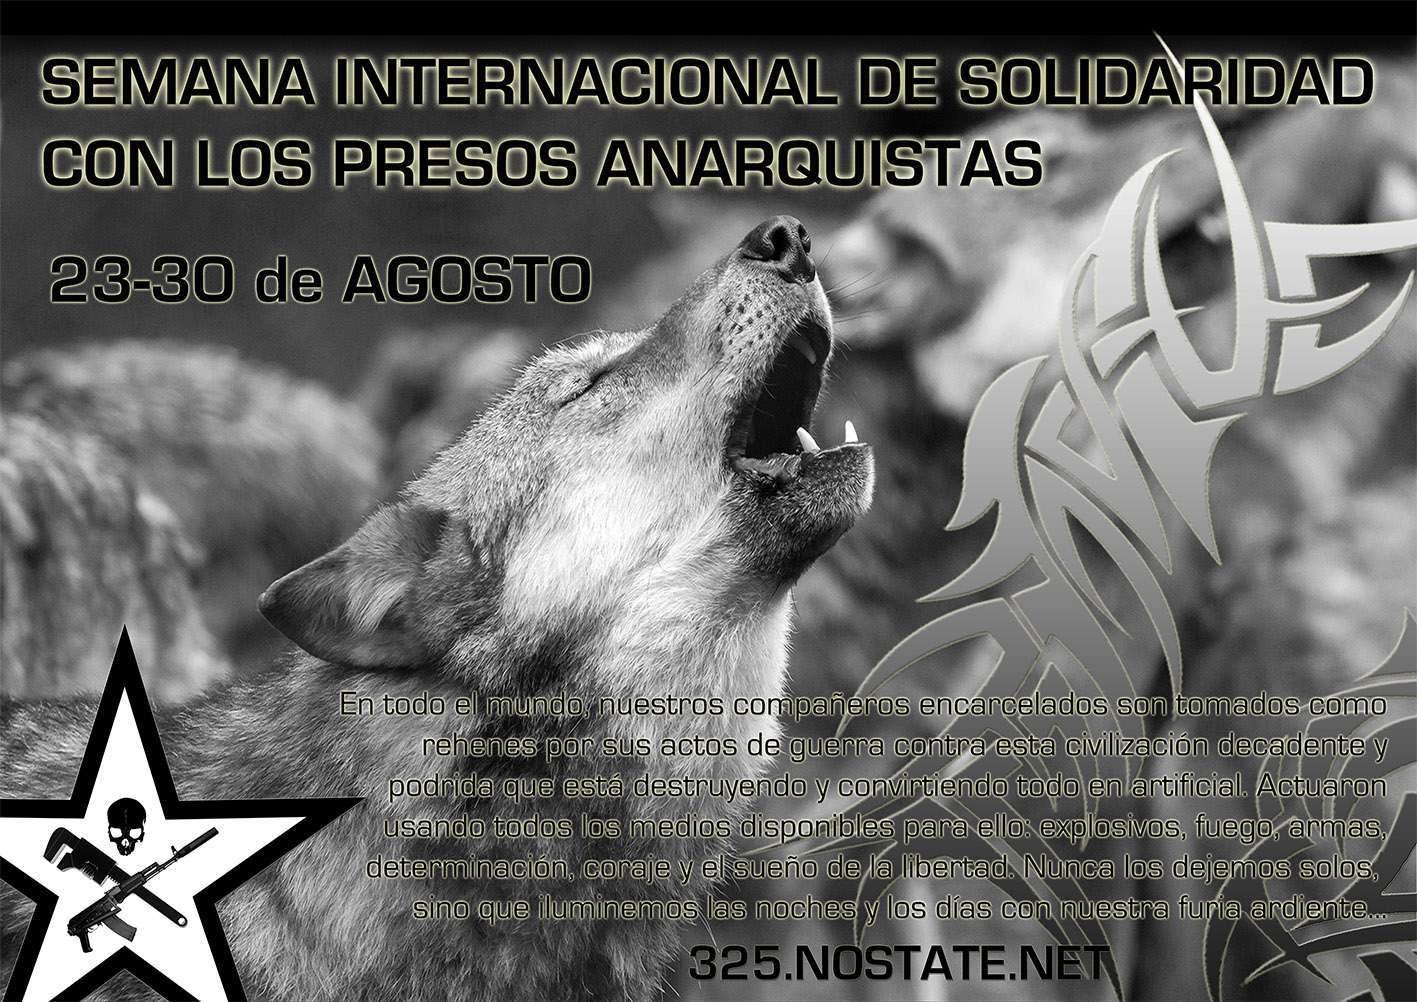 Semana Internacional de Solidaridad con los Presos Anarquistas – 23-30 de Agosto